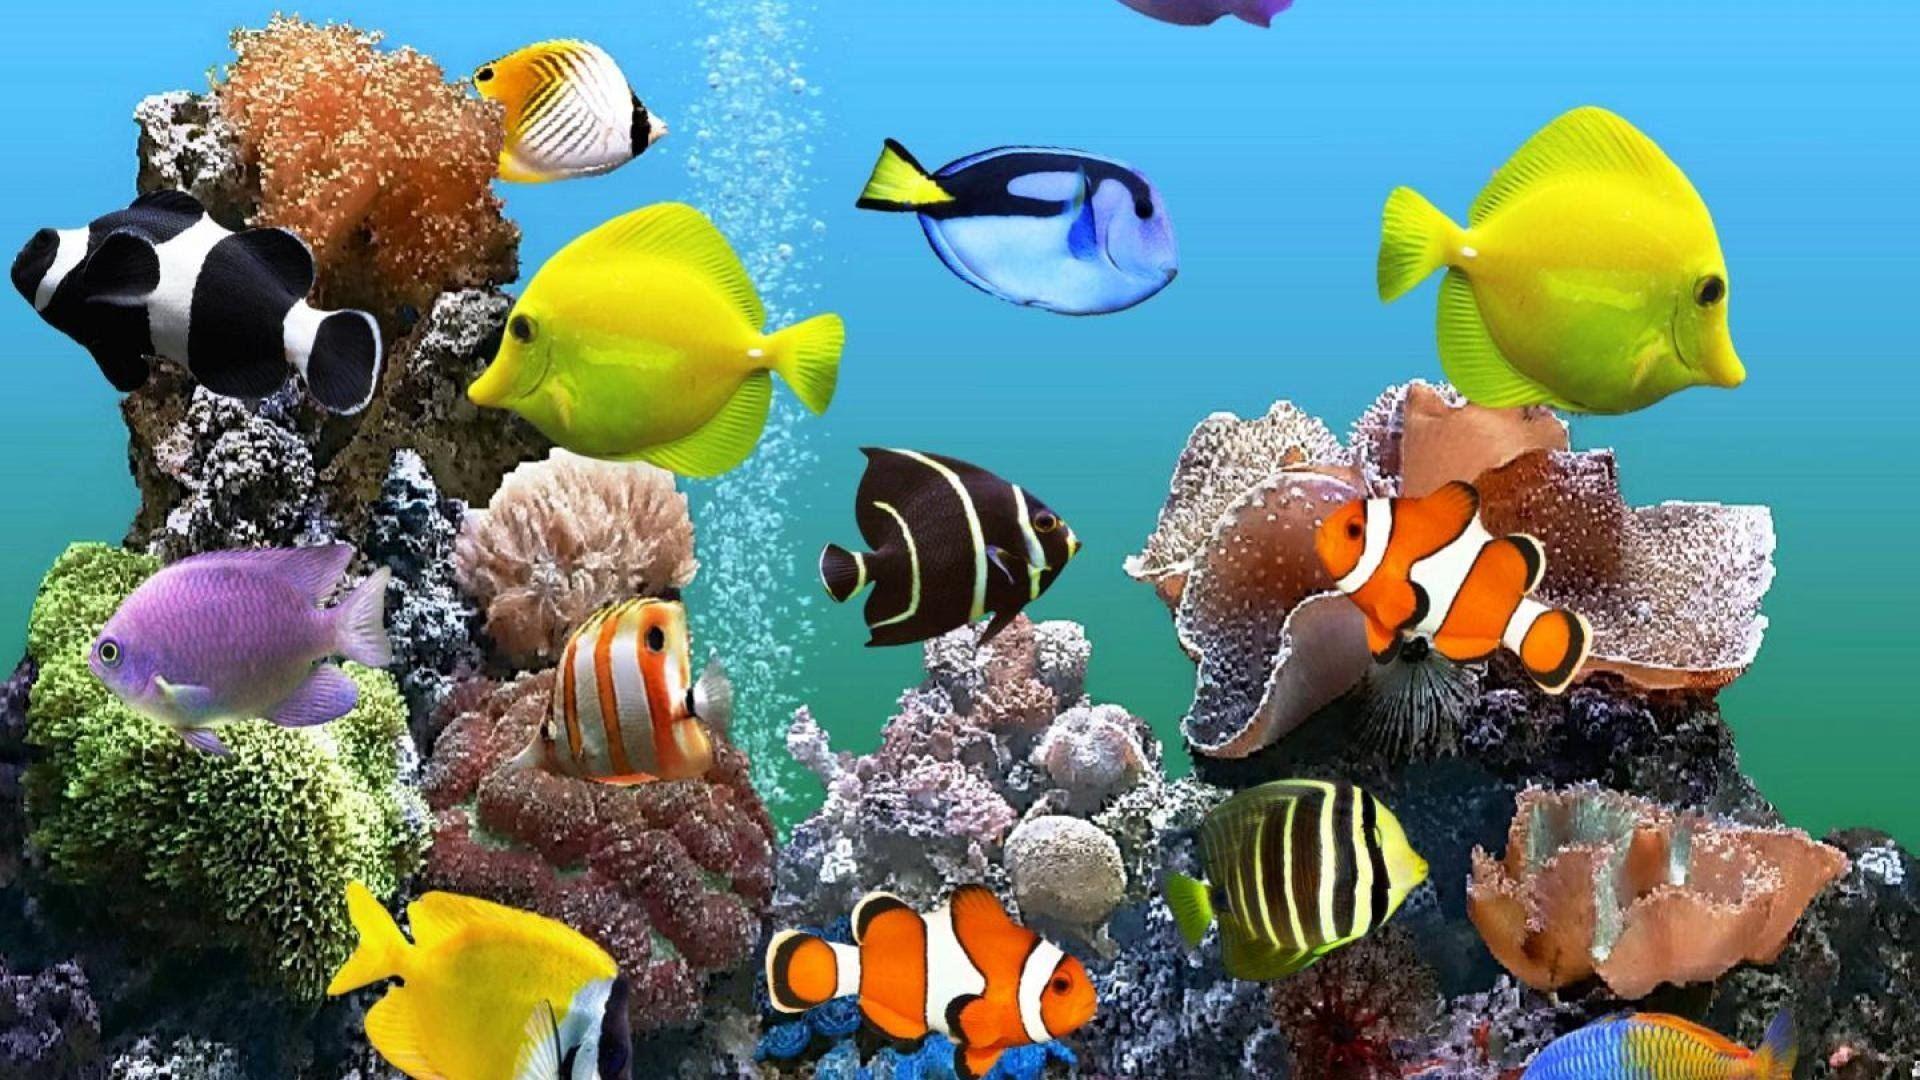 Cartoon Aquarium Wallpapers - Top Free Cartoon Aquarium Backgrounds